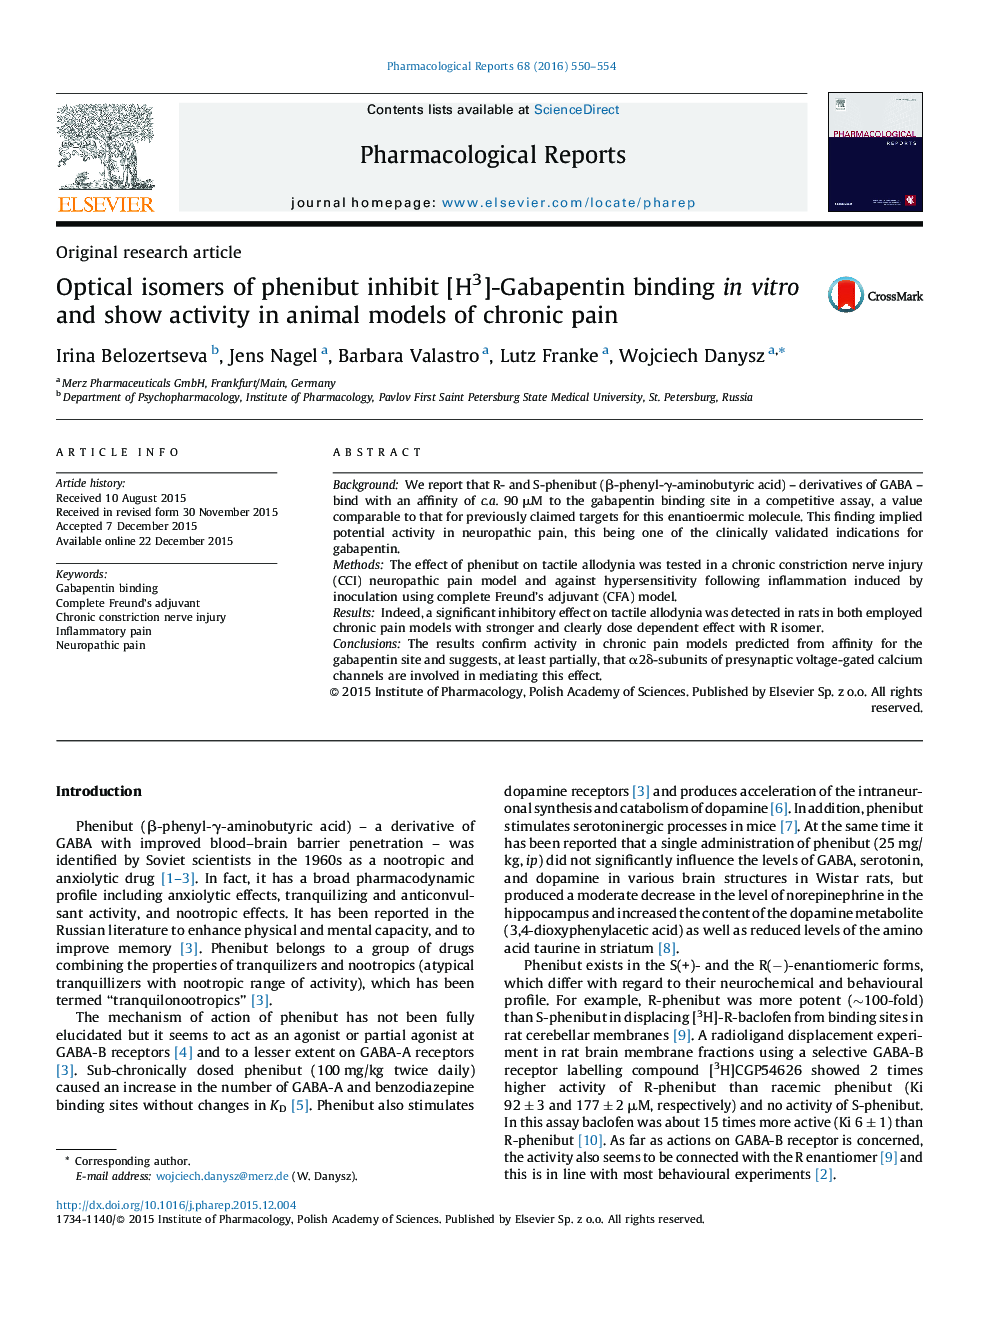 ایزومرهای نوری اتصال phenibut مهار [H3]Gabapentin در شرایط آزمایشگاهی و نشان دهنده فعالیت در مدل های حیوانی درد مزمن